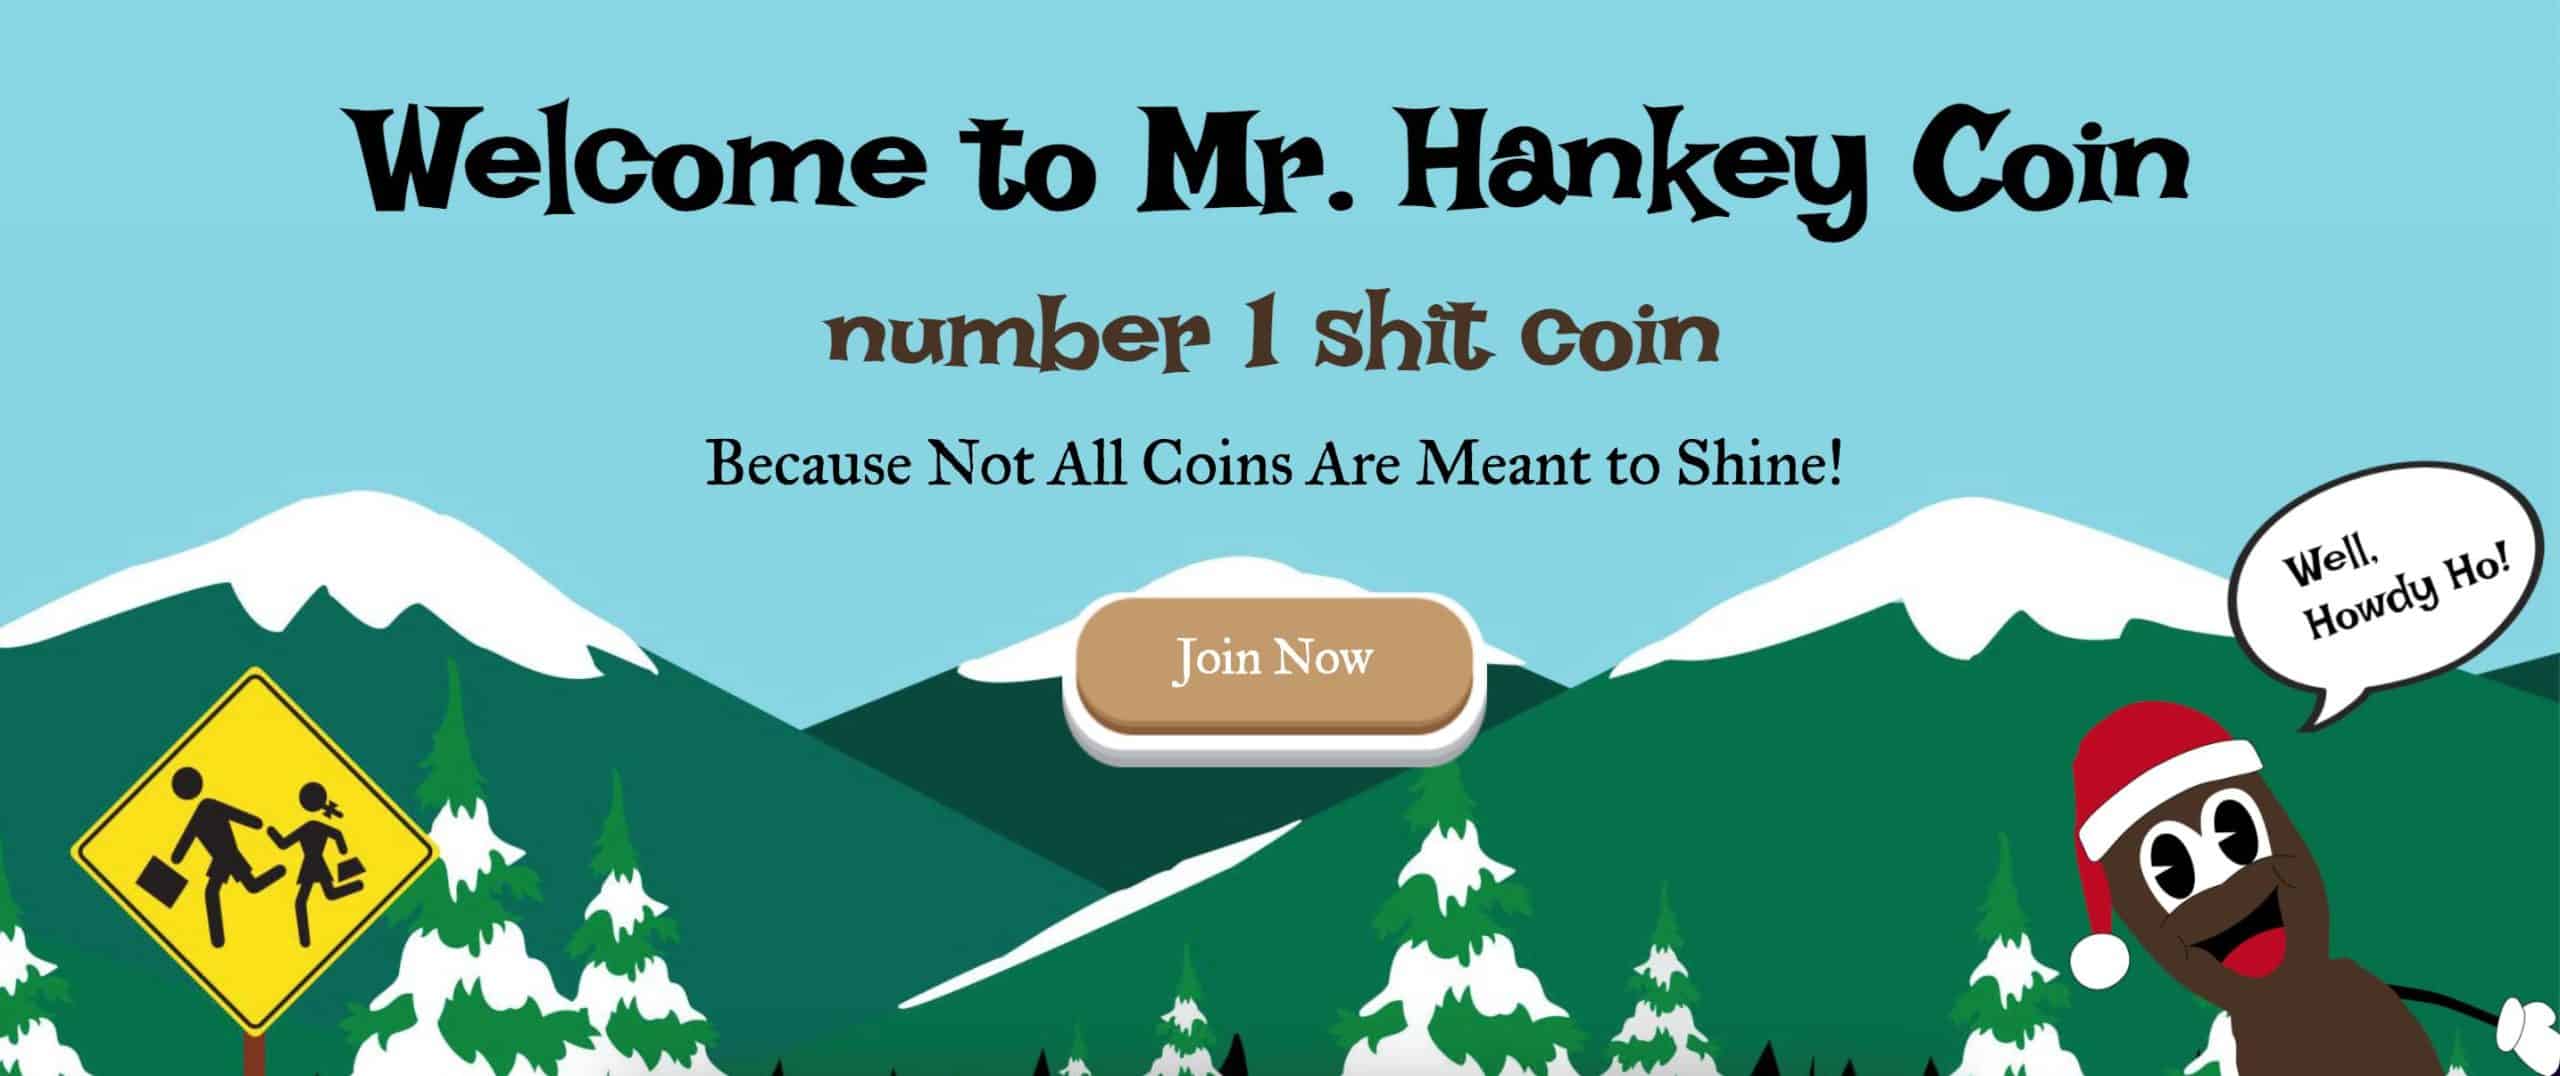 Mr. Hankey Coin Website - Yeni Çıkan Coinler